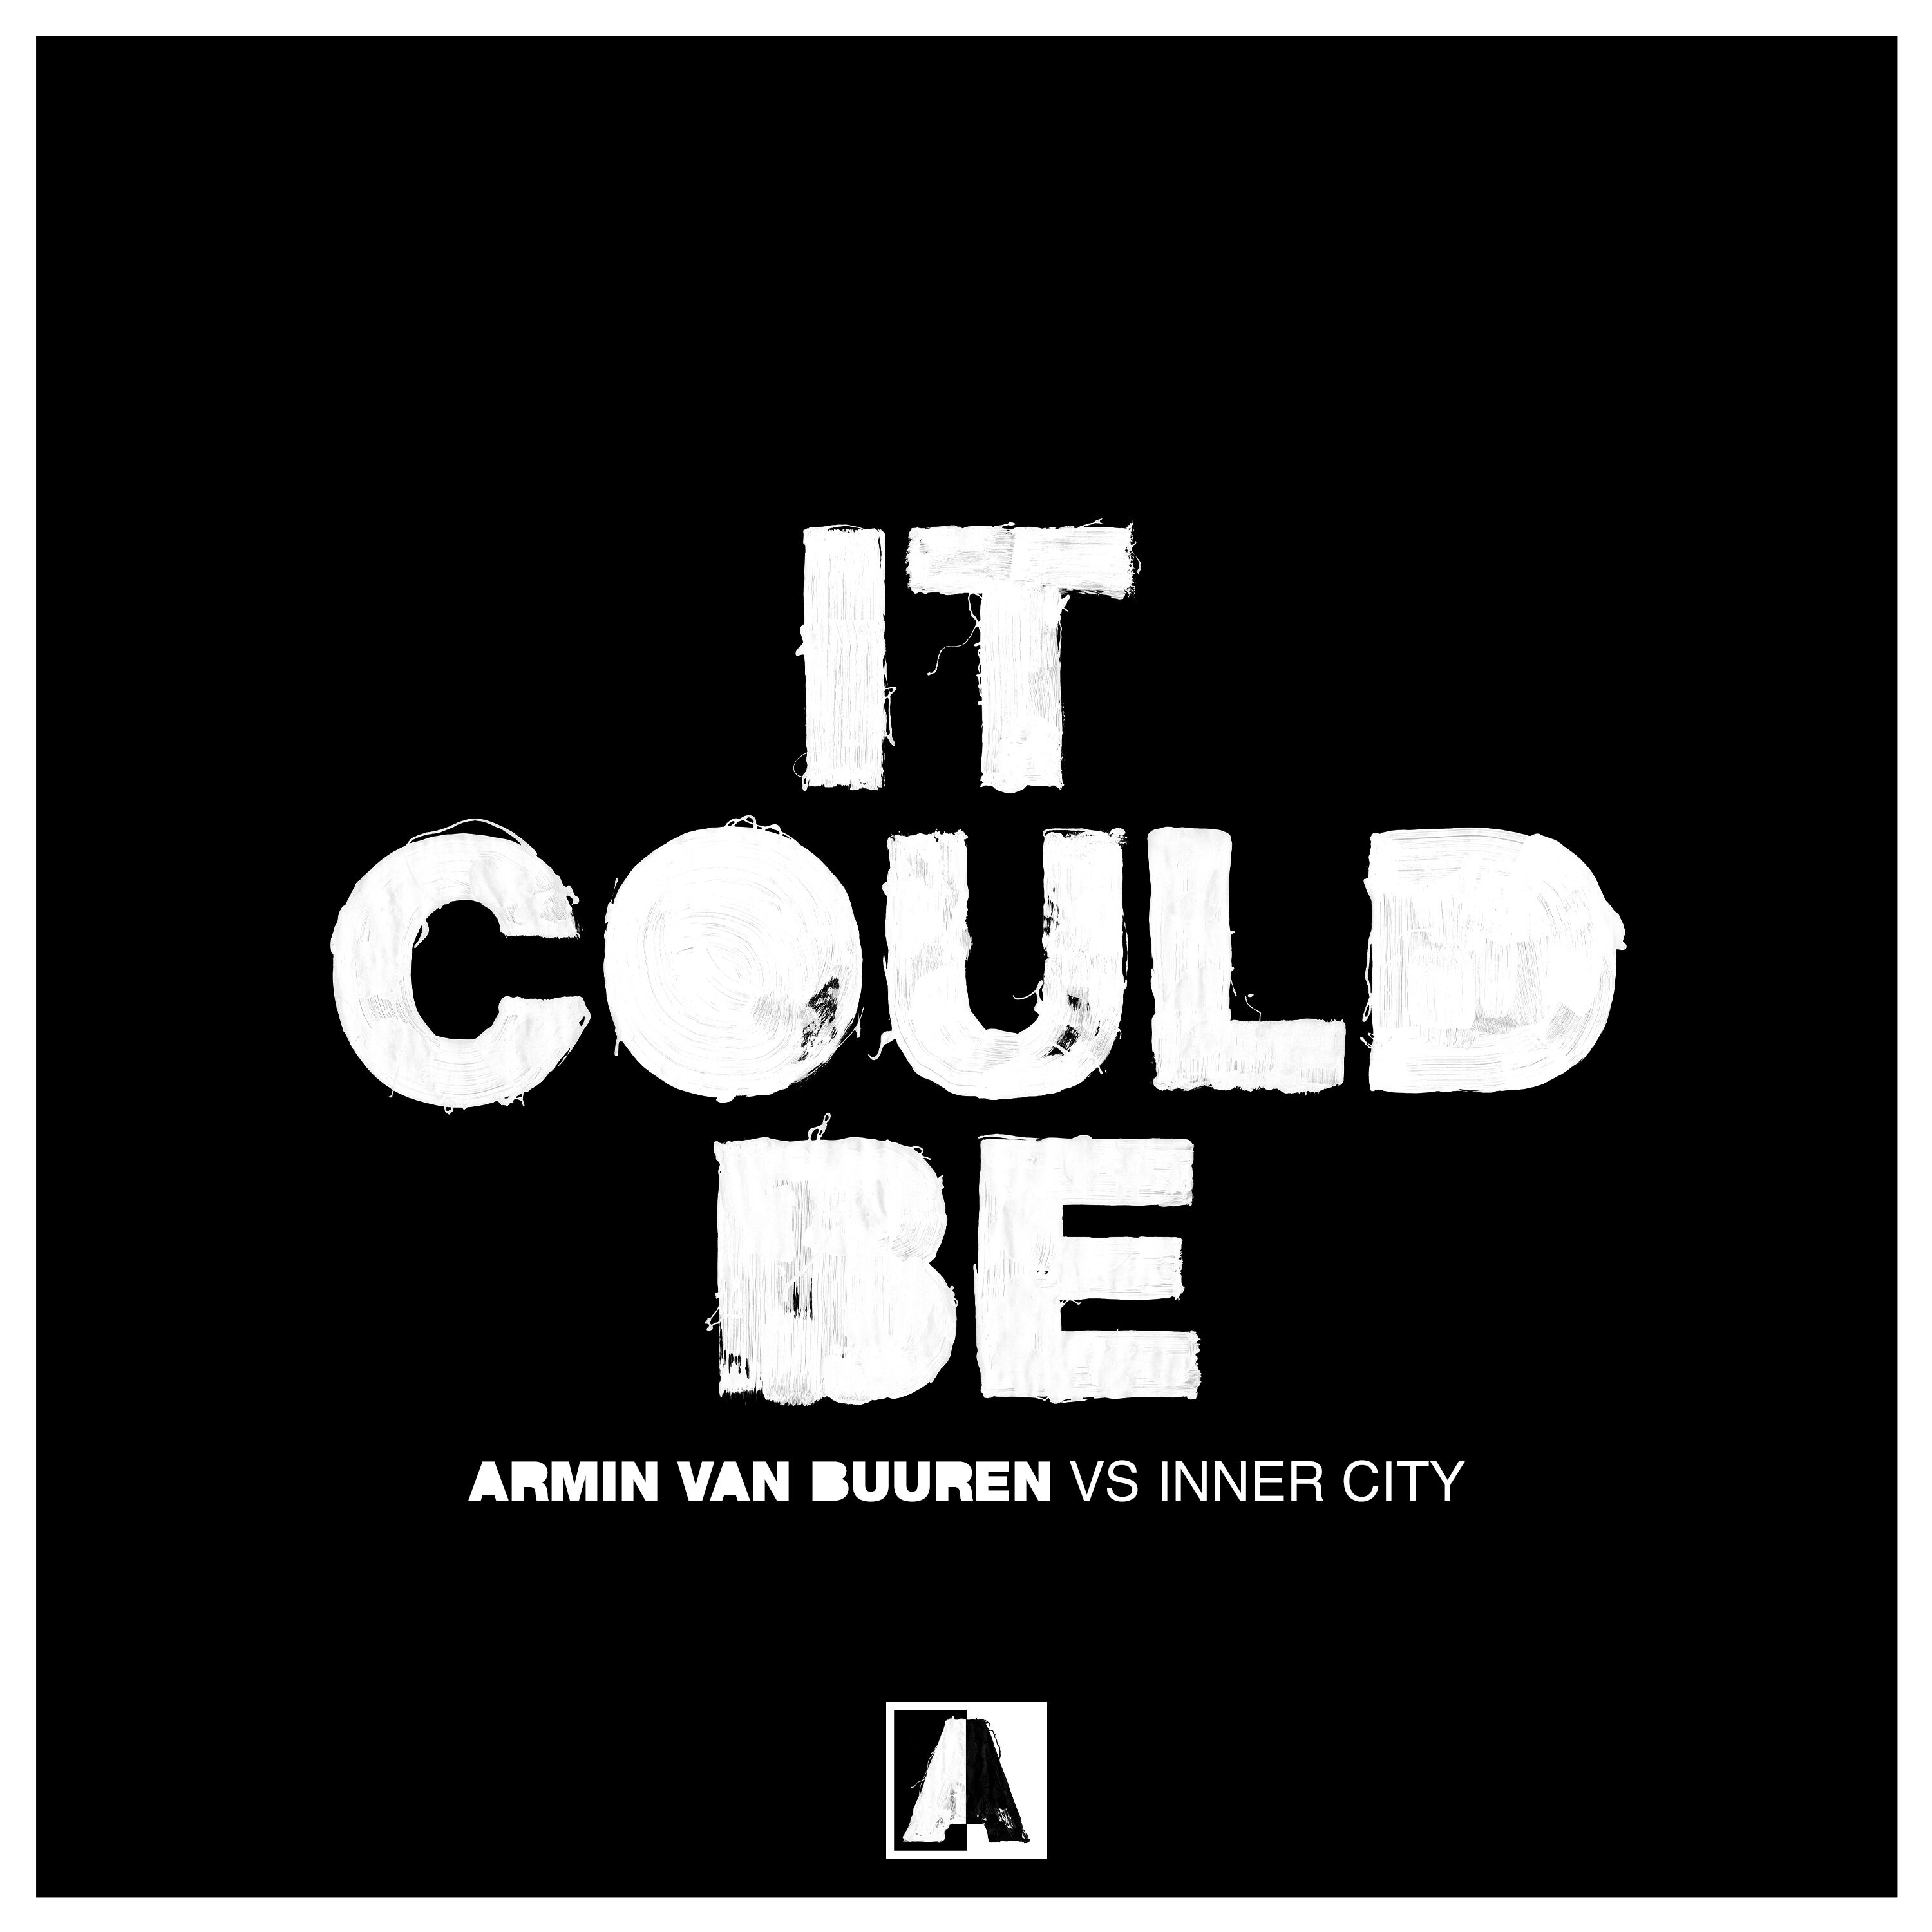 Armin van Buuren vs Inner City presents It Could Be on Armada Music